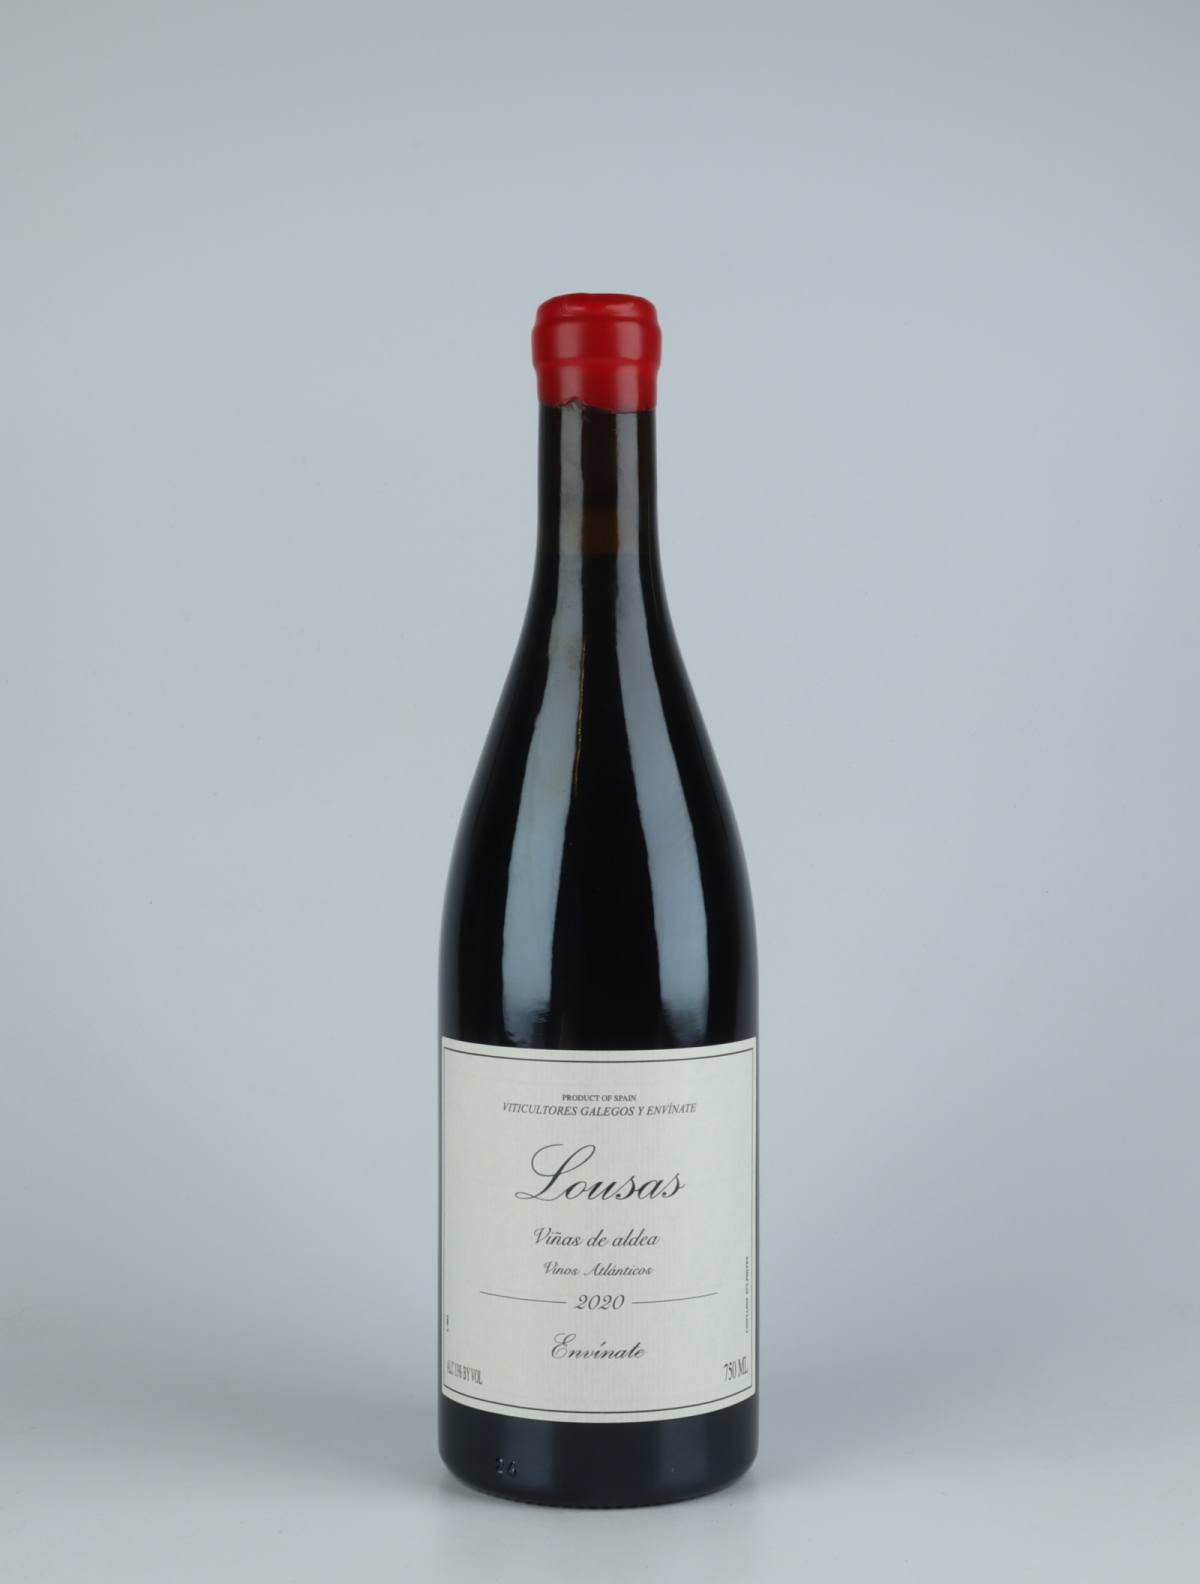 A bottle 2020 Lousas Viñas de Aldea - Ribeira Sacra Red wine from Envínate, Ribeira Sacra in Spain